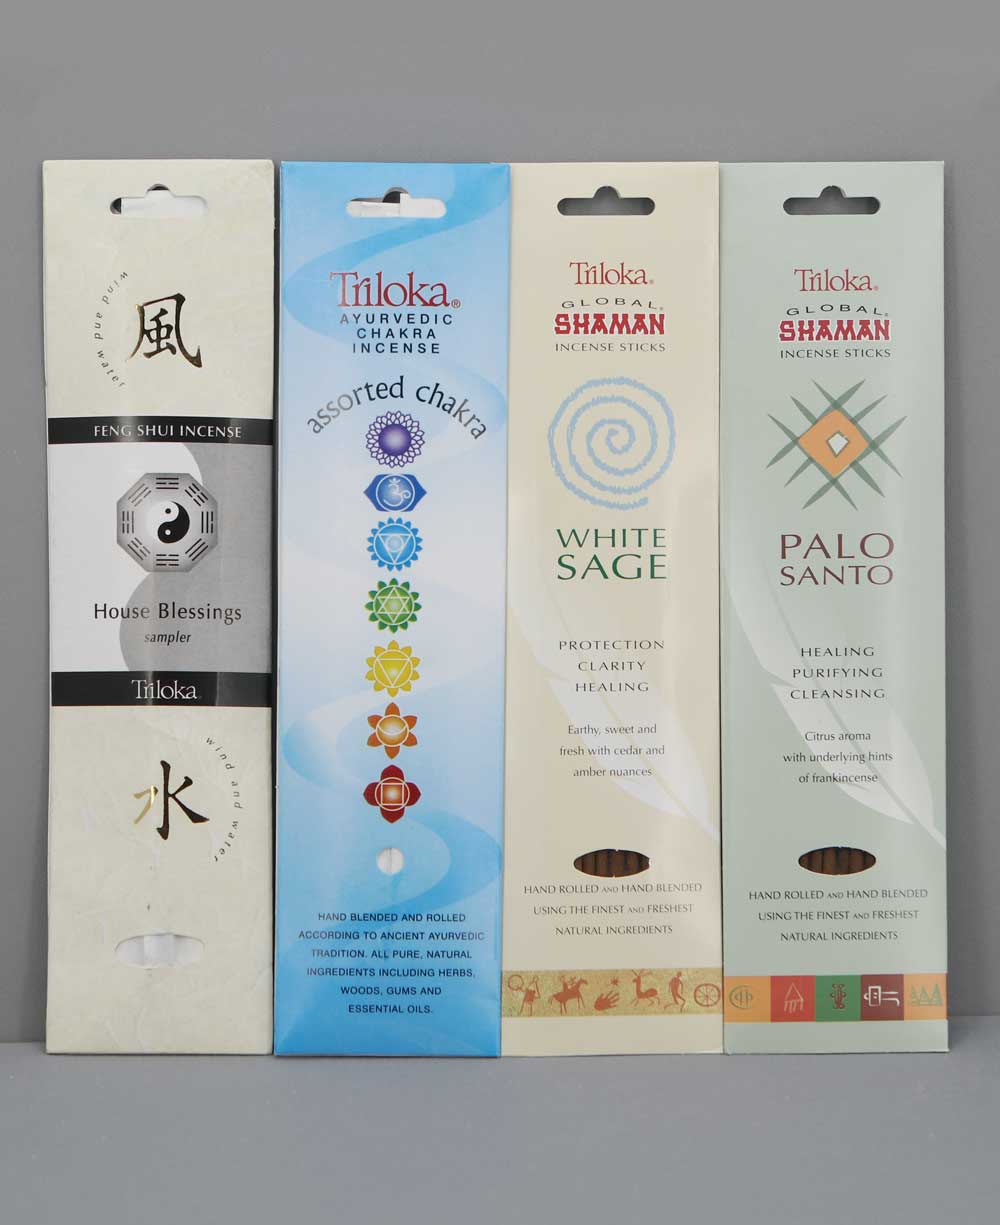 Global Traditions Incense Sampler Pack - Incense